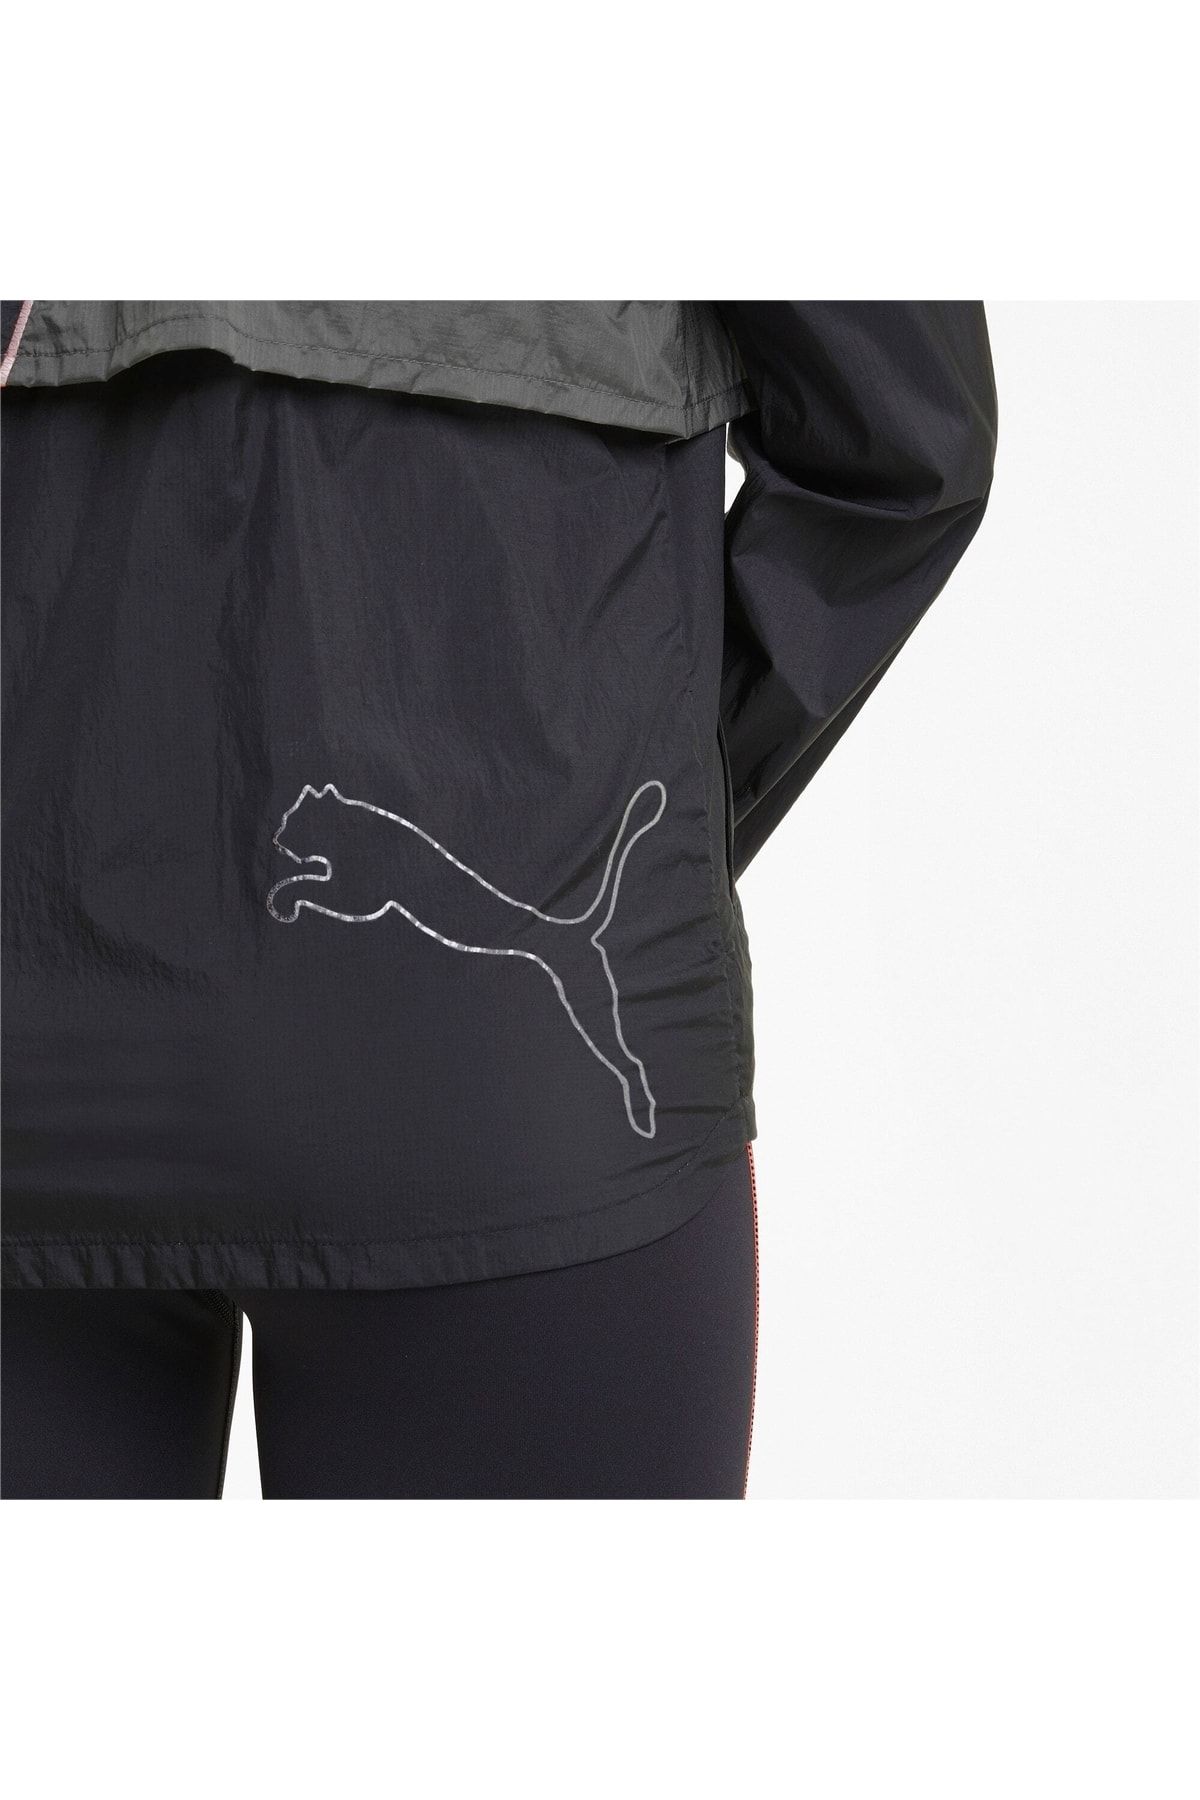 Puma RUN ULTRA Kadın Koşu Ceket